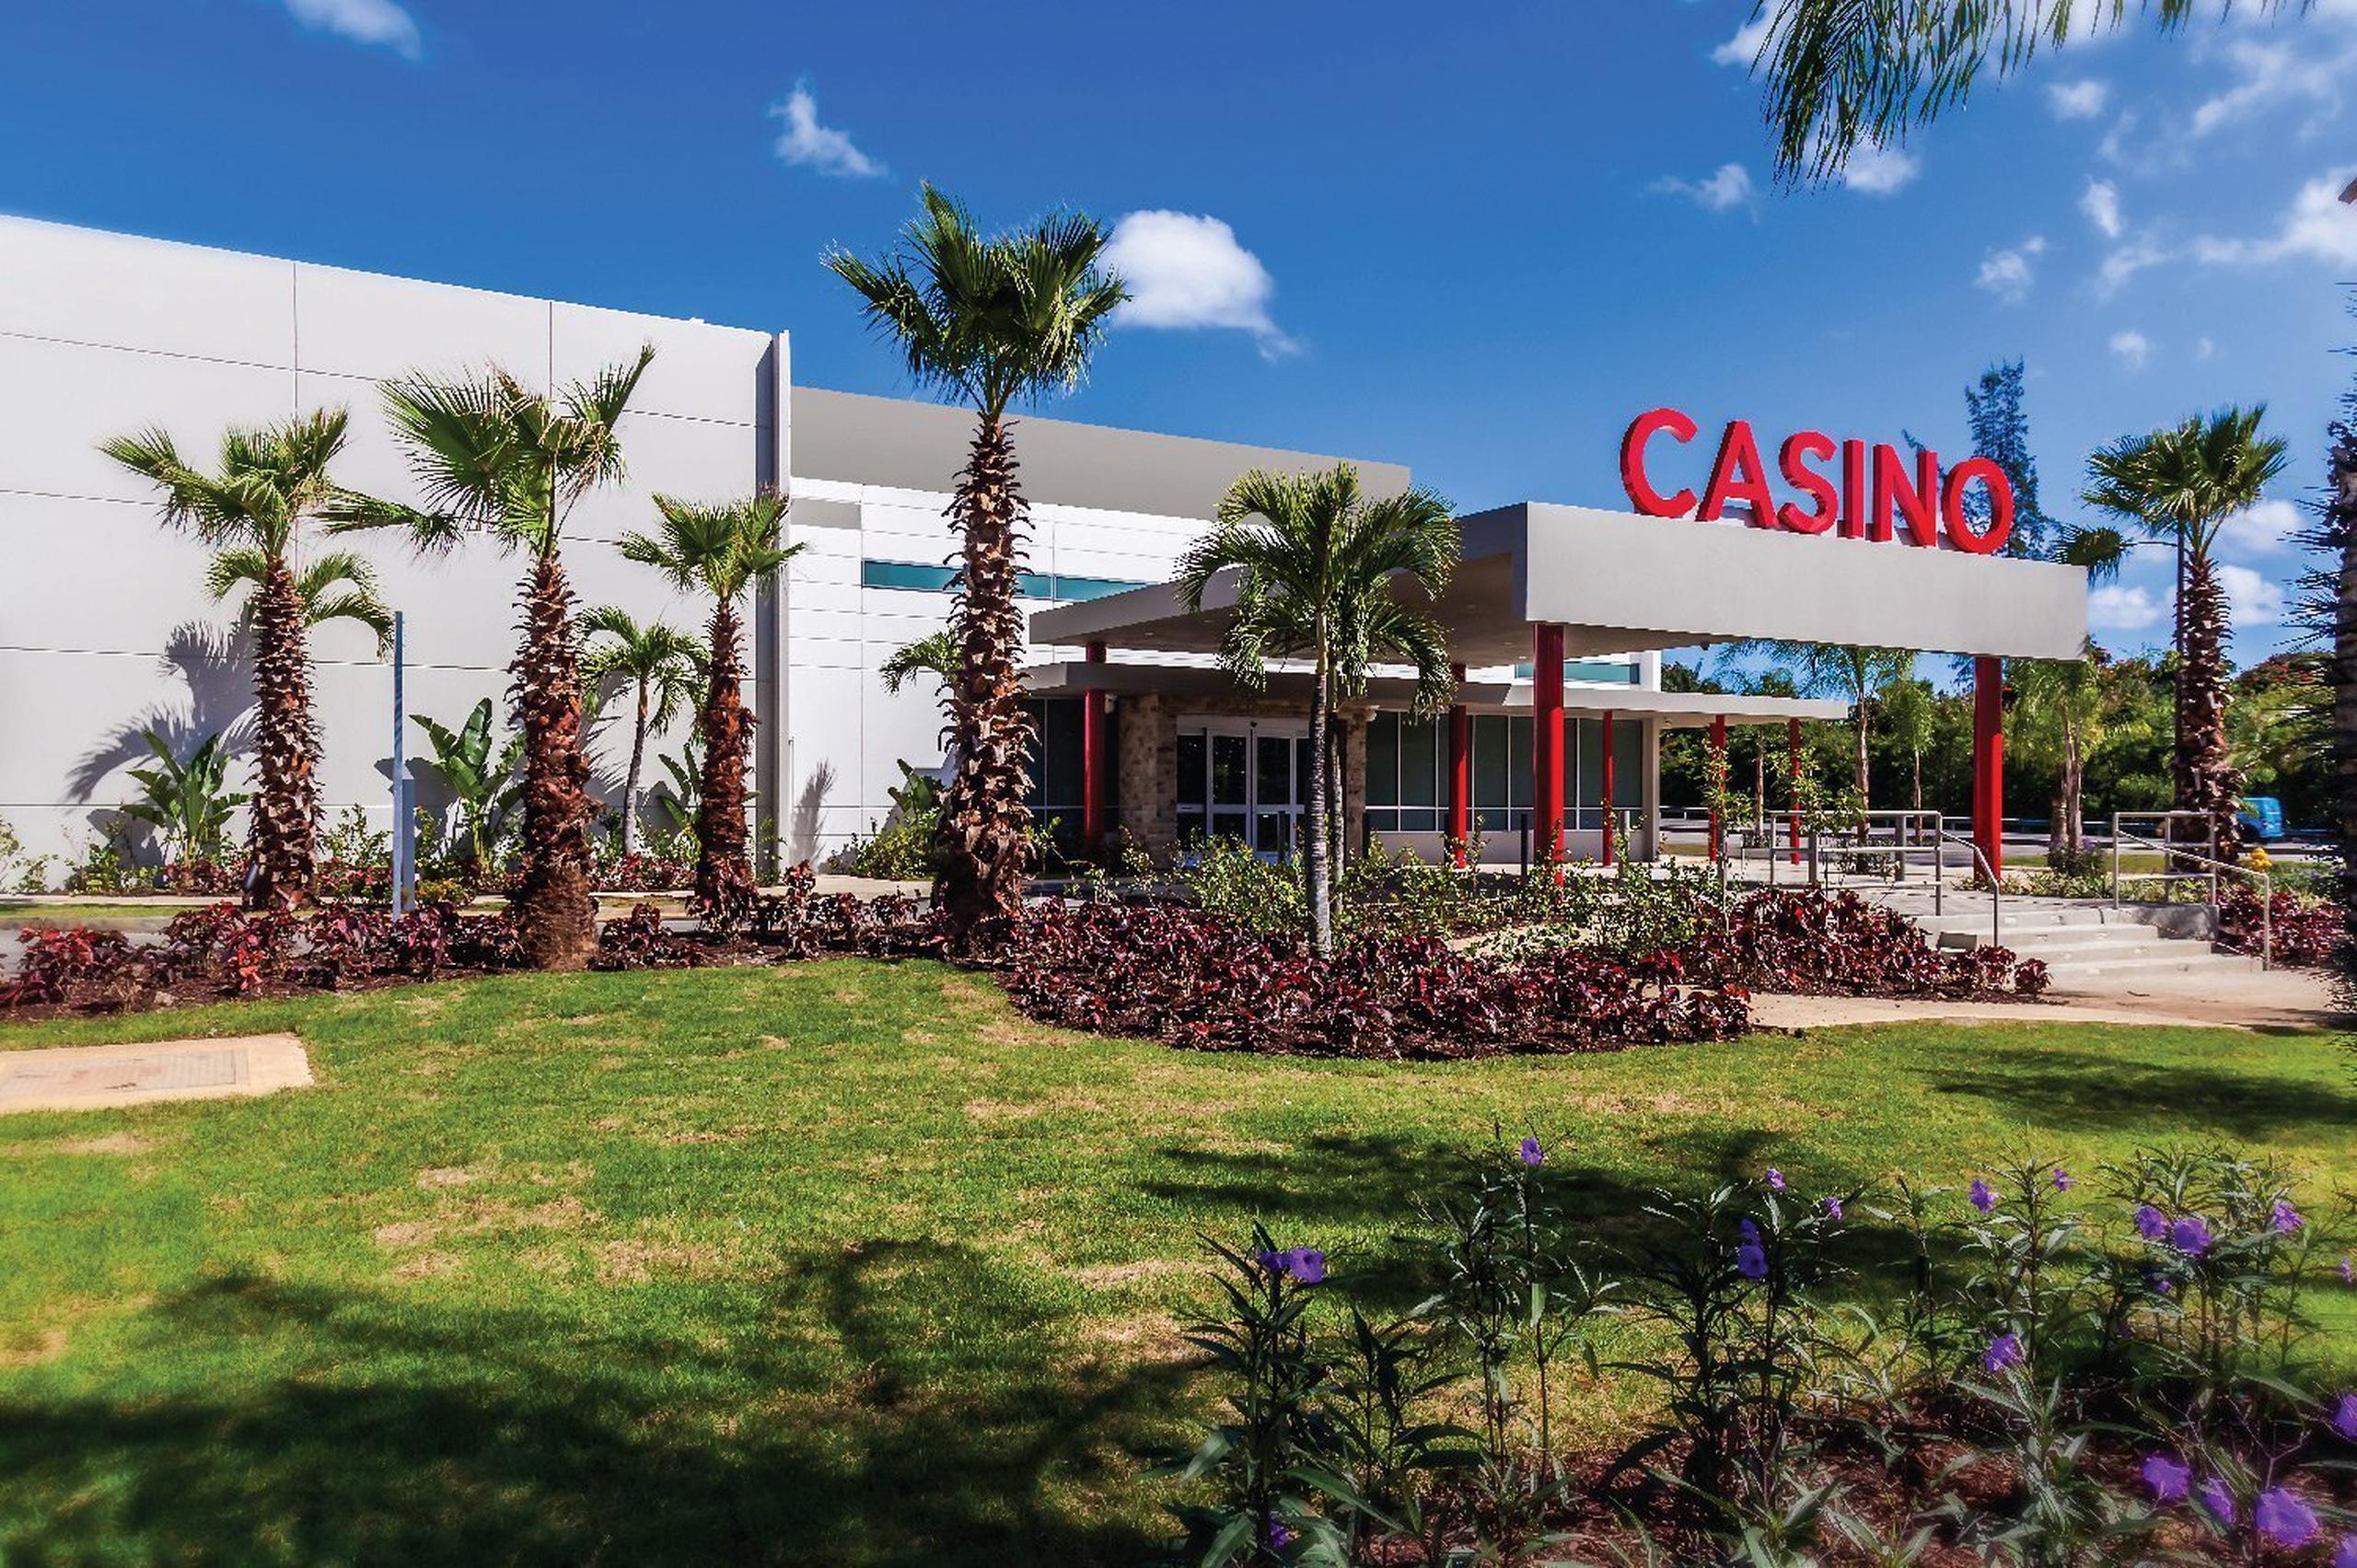 Los sospechosos forzaron una puerta que da acceso a la bóveda del casino y se apropiaron $160,000 en efectivo.